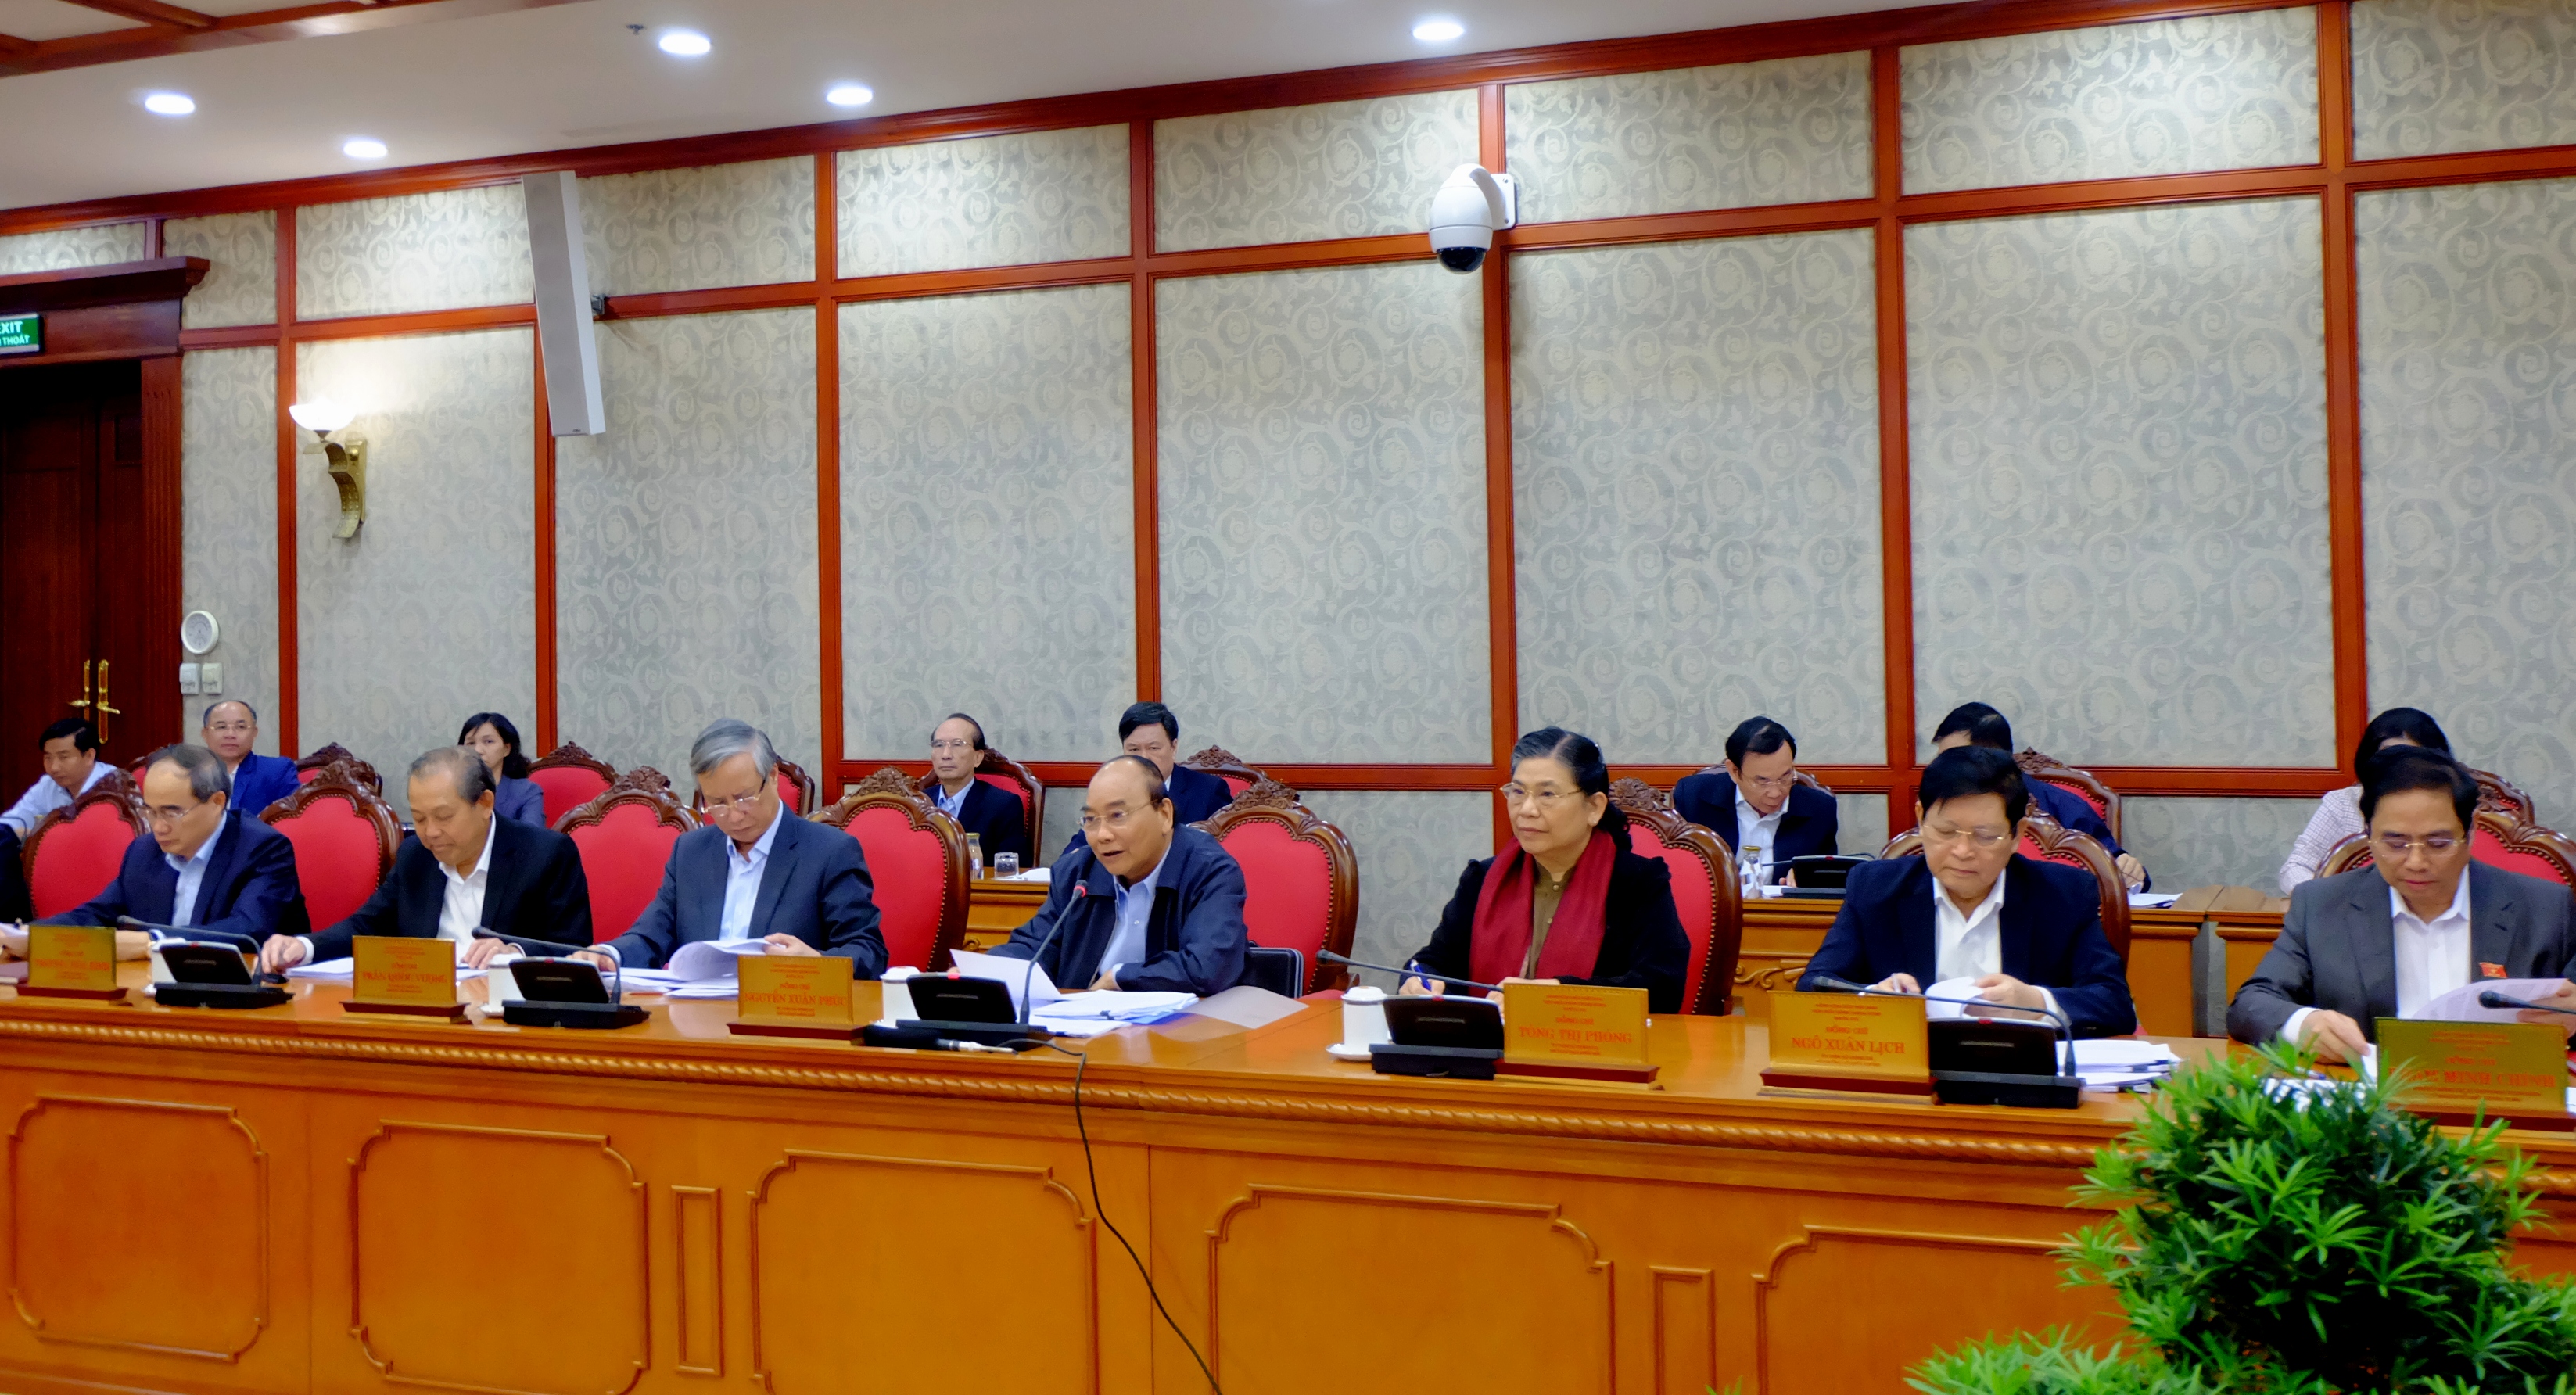 Thủ tướng Chính phủ Nguyễn Xuân Phúc phát biểu trong buổi làm việc giữa Bộ Chính trị với Ban Thường vụ Tỉnh ủy Đắk Lắk